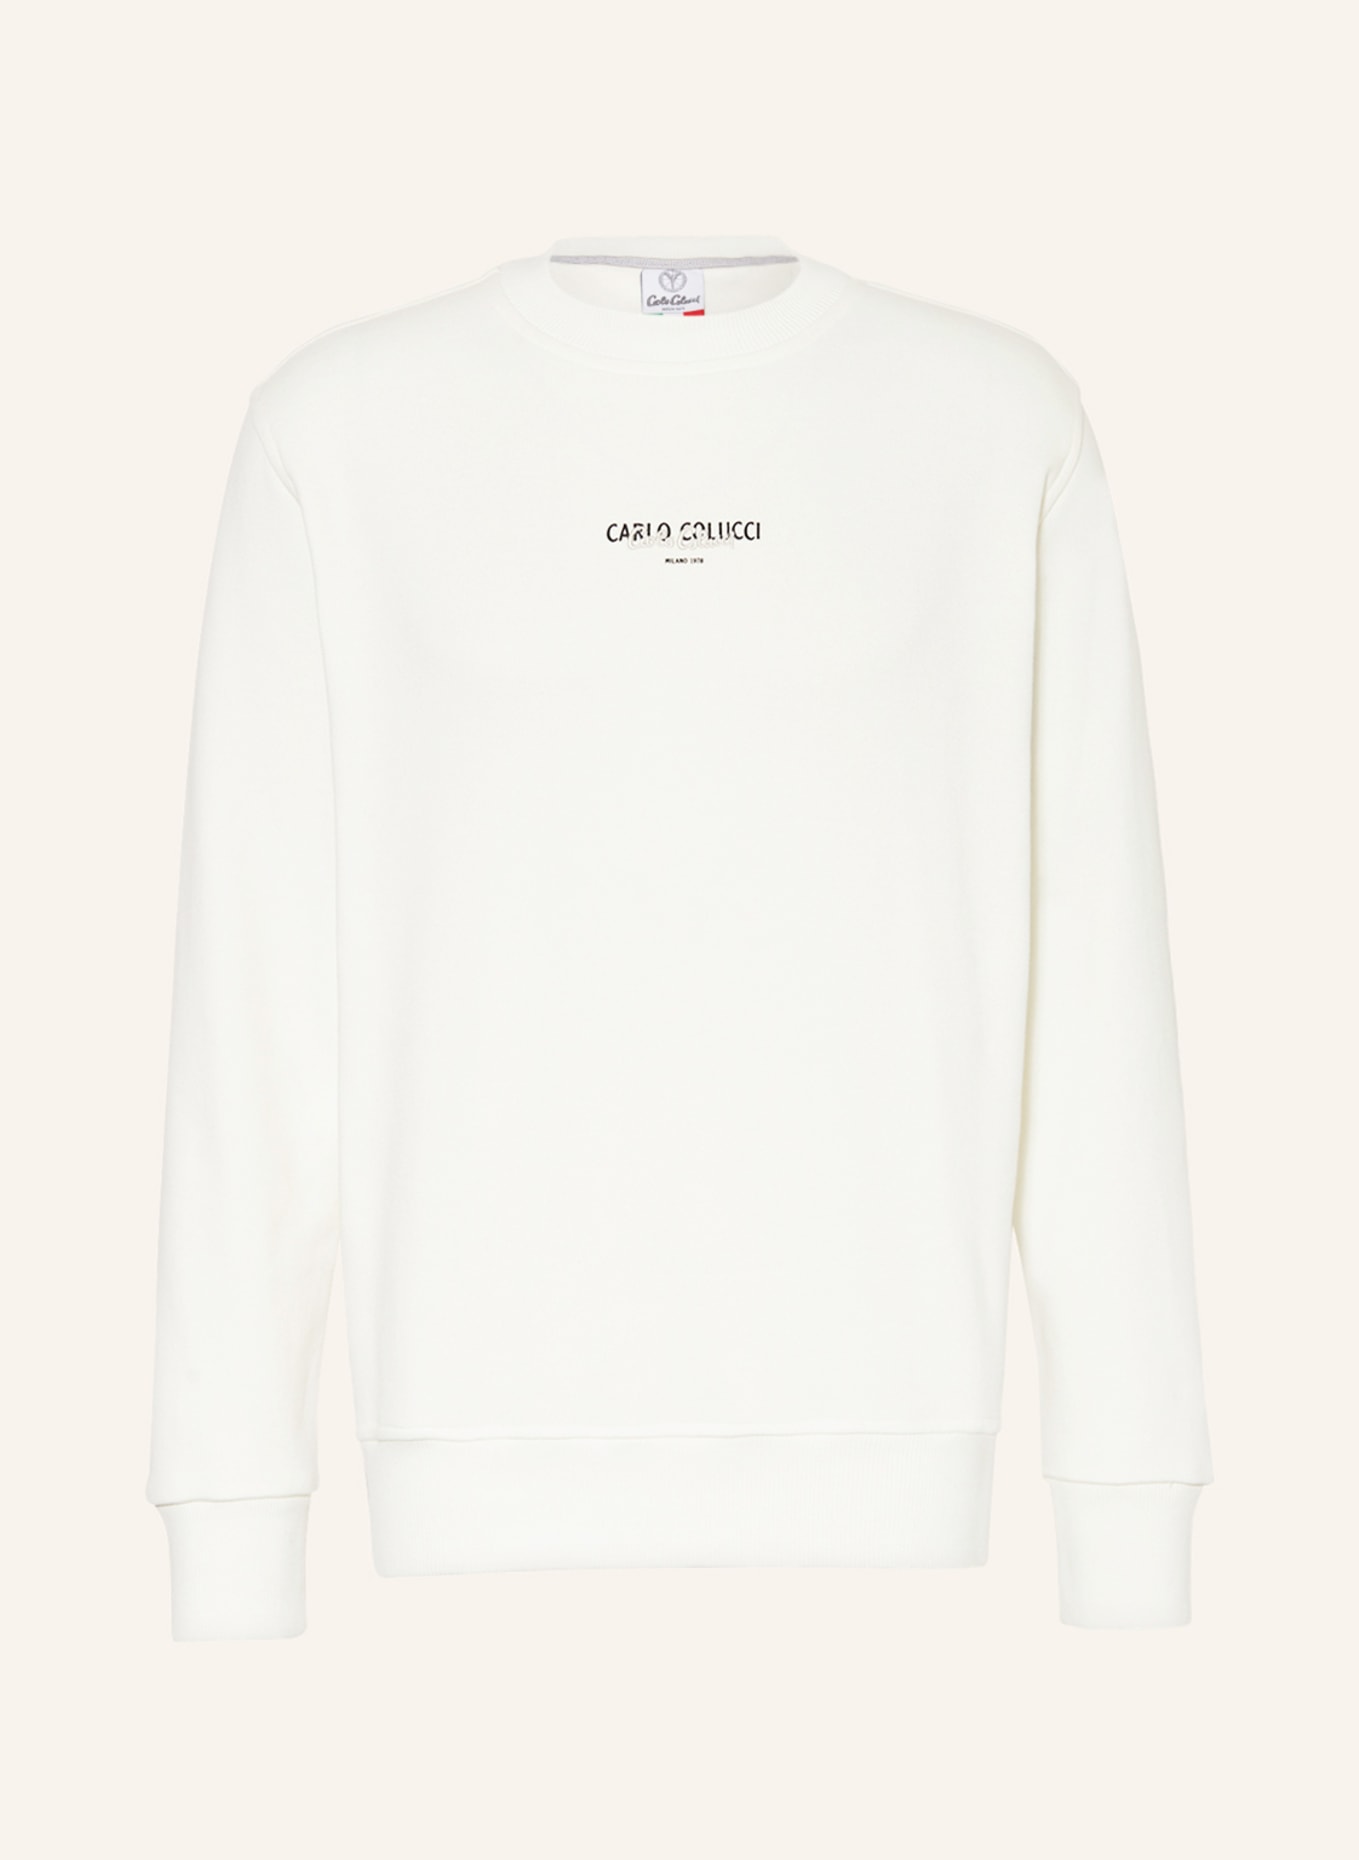 CARLO COLUCCI Sweatshirt, Color: CREAM (Image 1)